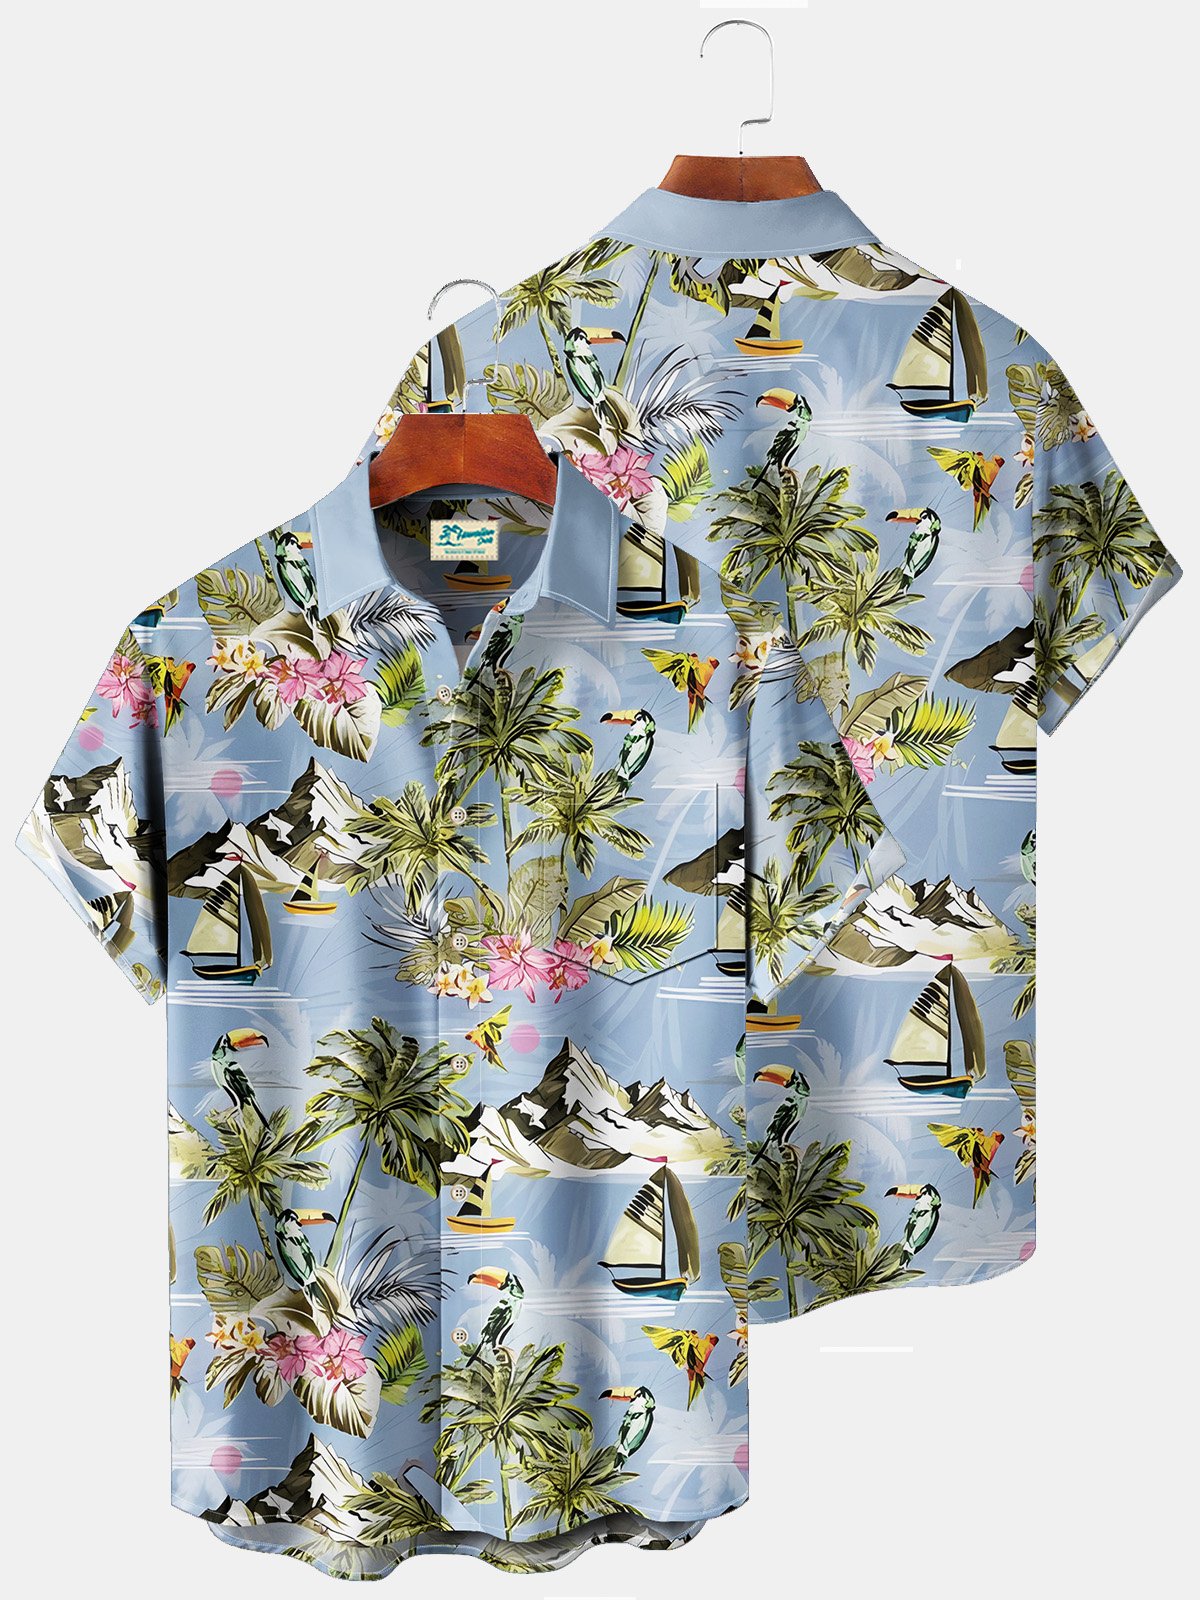 Royaura Beach Vacation Light Blue Men's Hawaiian Shirts Island Sailing Coconut Tree Cartoon Art Plus Size Aloha Camp Pocket Shirt